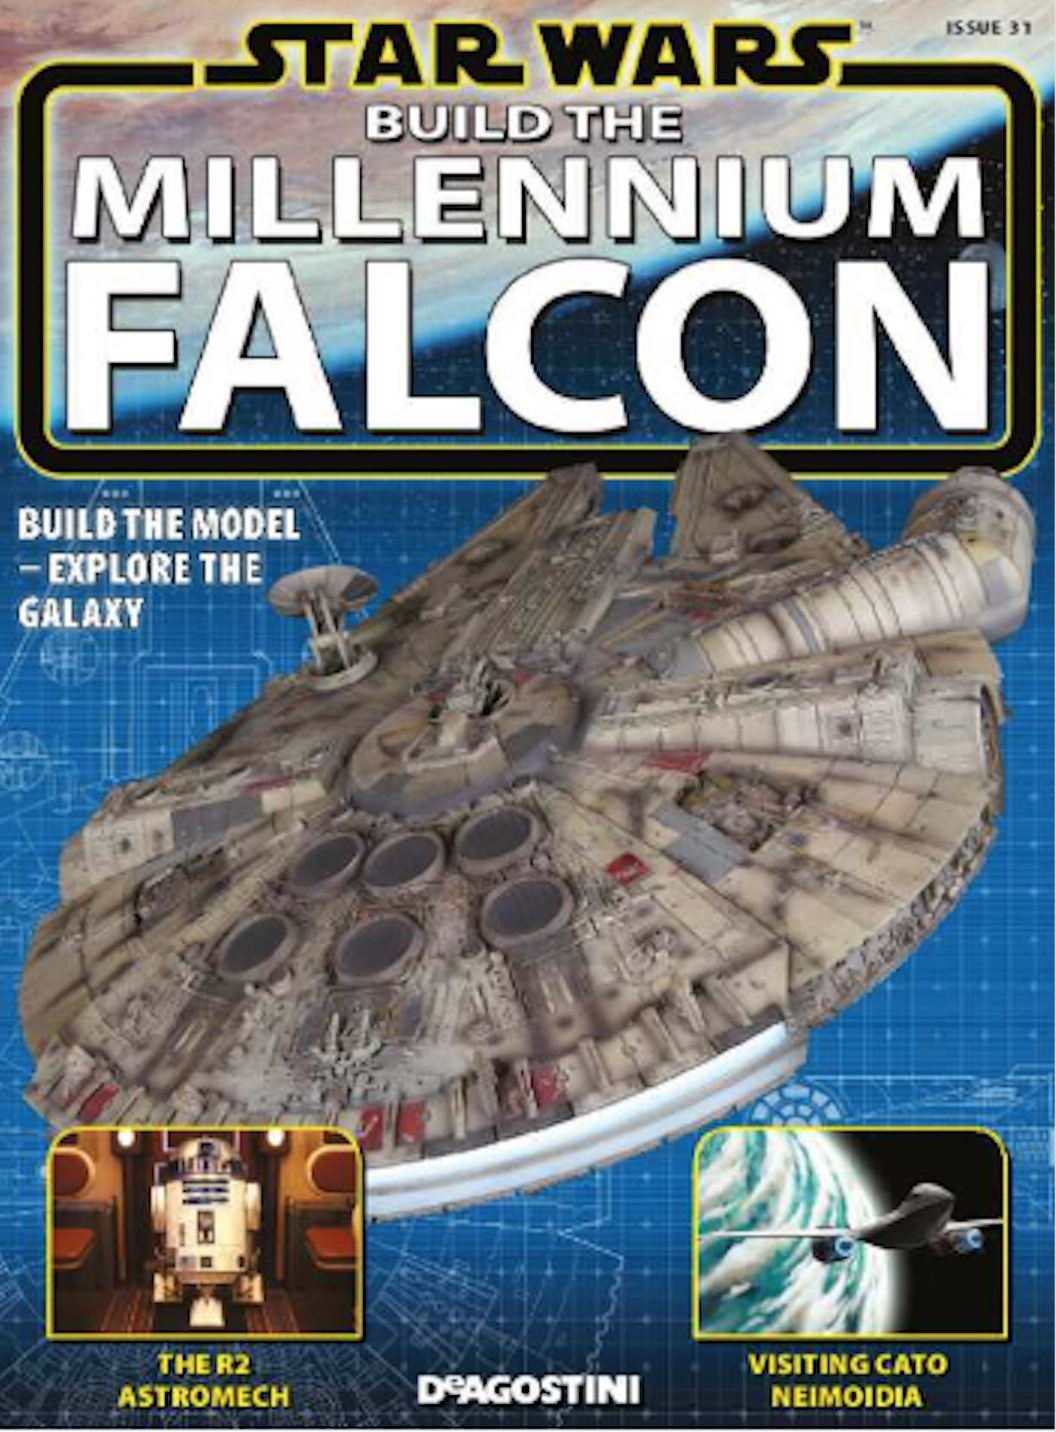 How Was the Millennium Falcon Built?